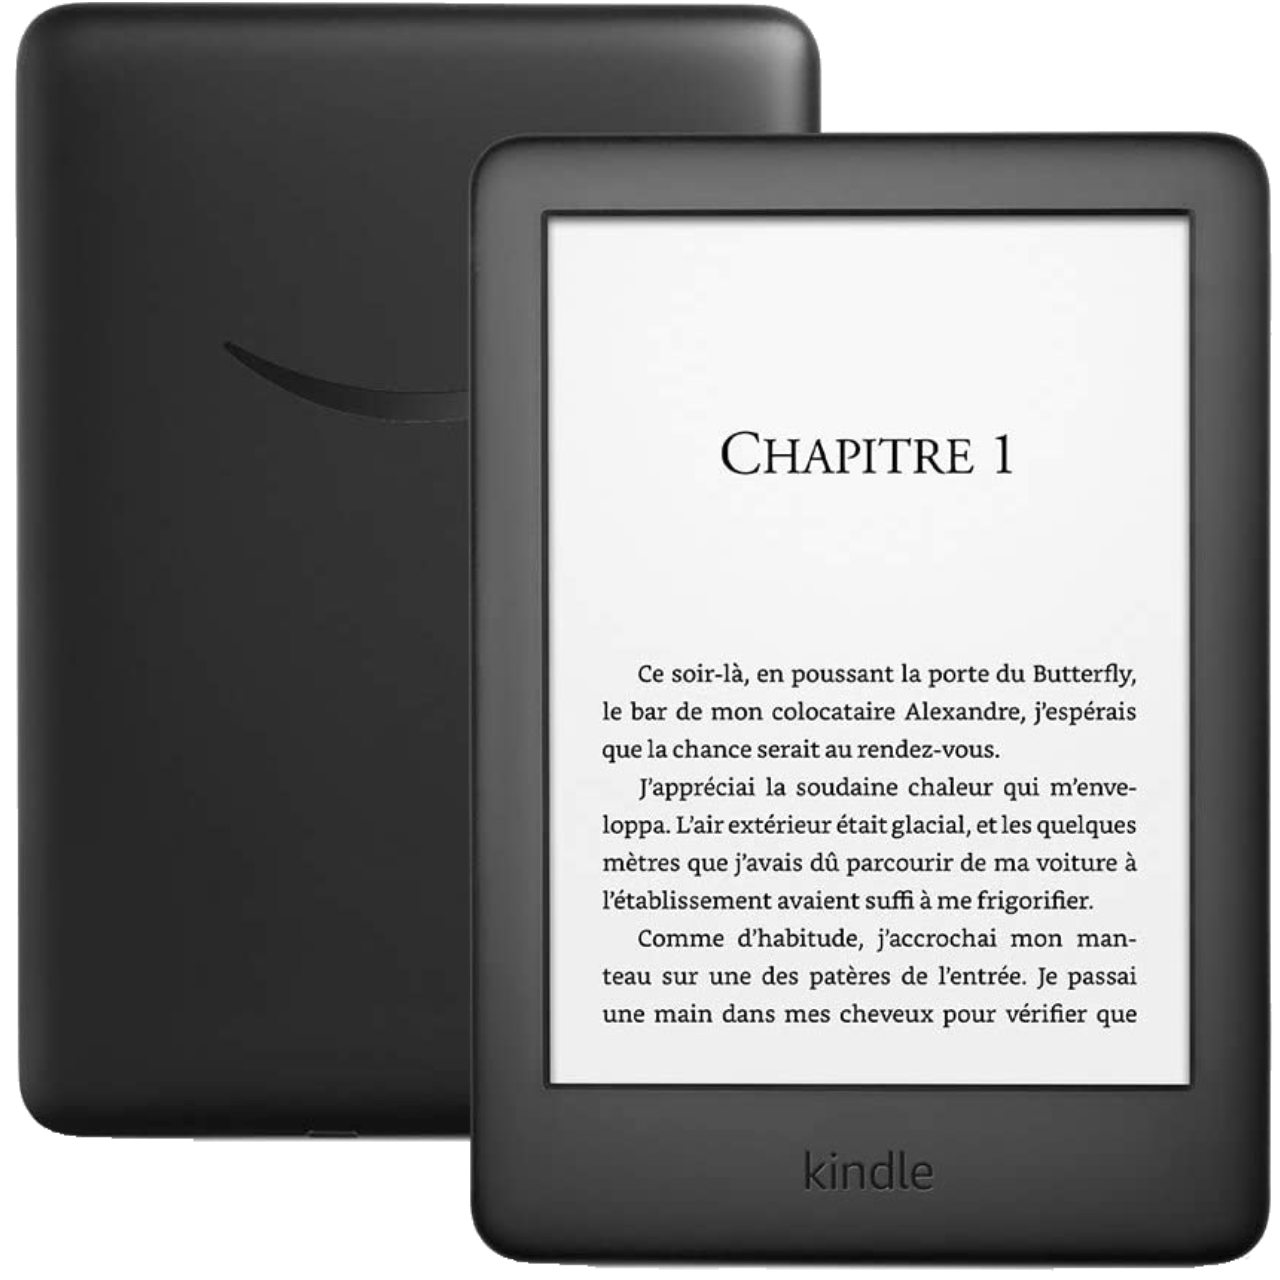 La nouvelle liseuse Kindle Paperwhite 2018 est disponible en précommande